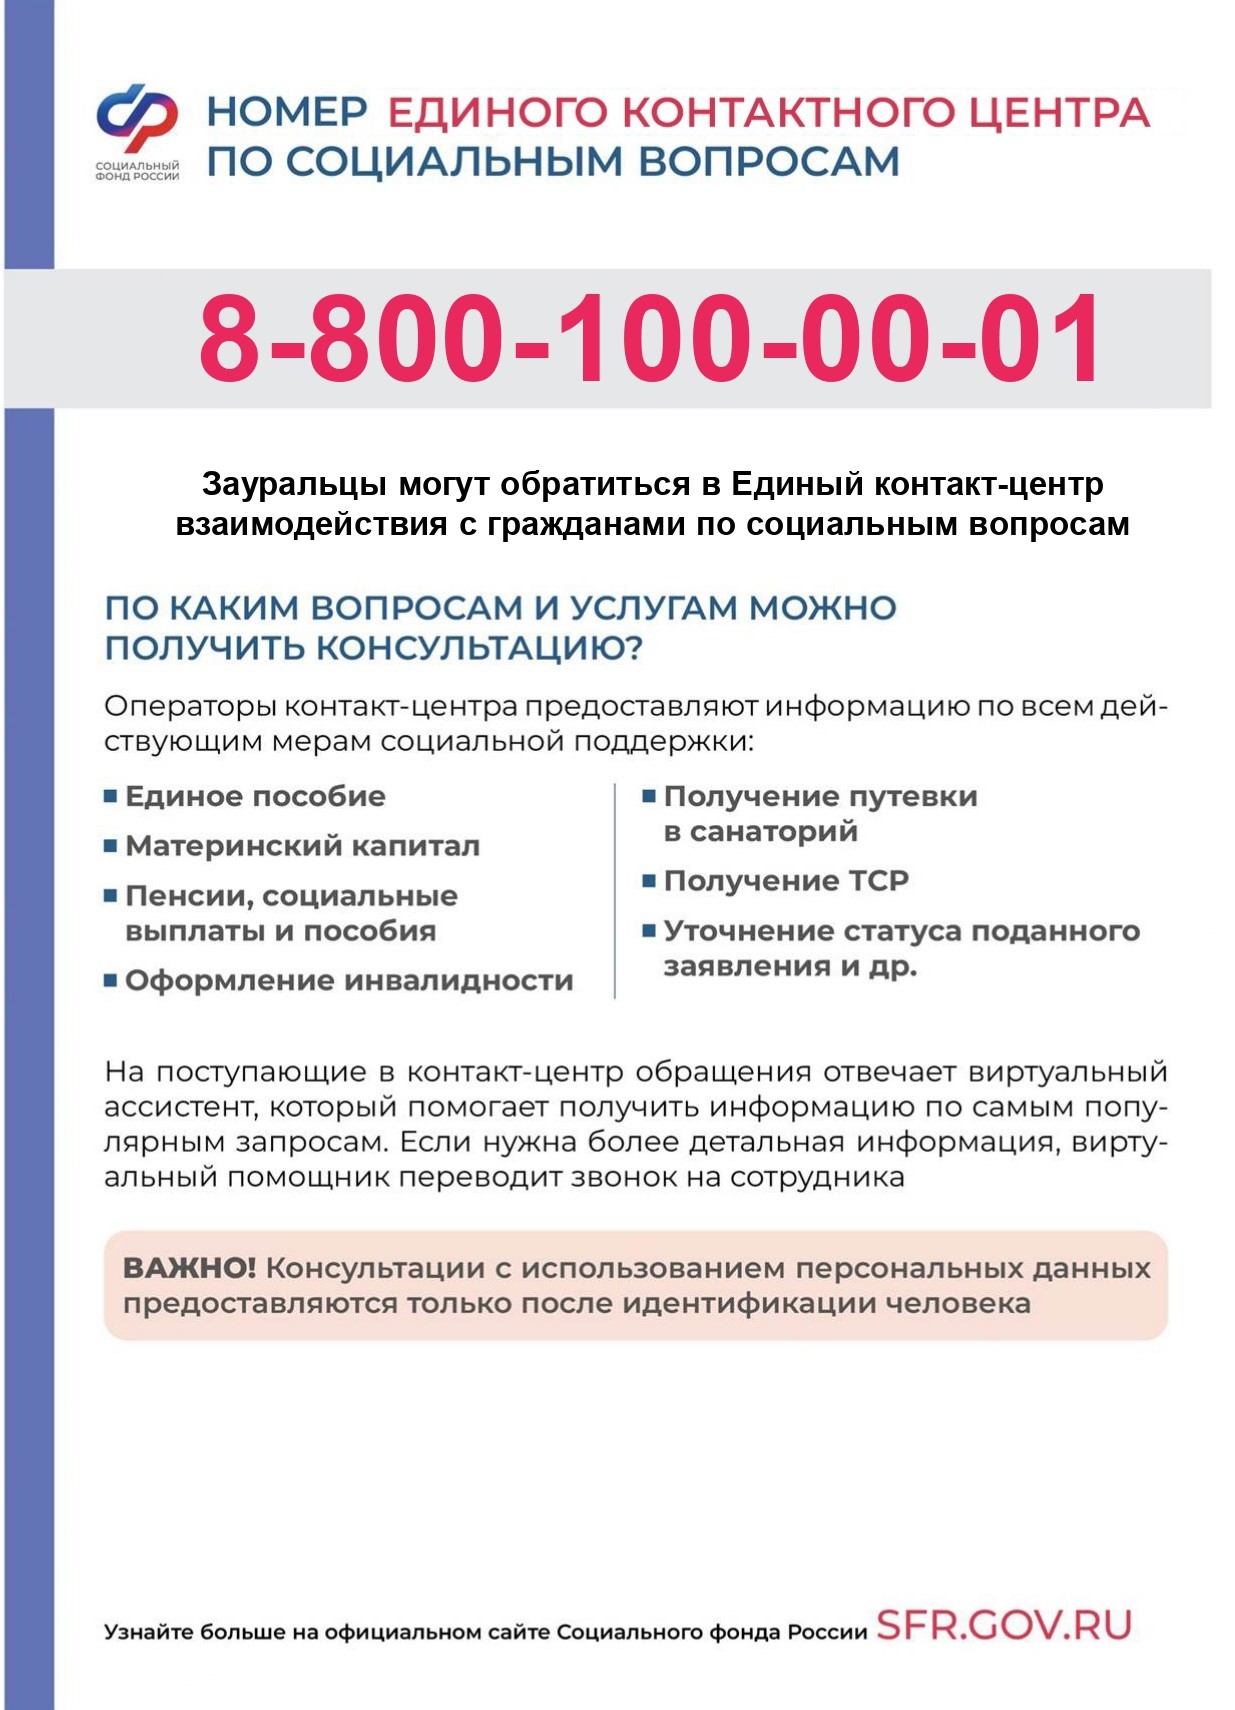 Отделение Фонда пенсионного и социального страхования РФ по Курганской области сообщает об изменении телефонного номера Единого контакт-центра взаимодействия с гражданами..